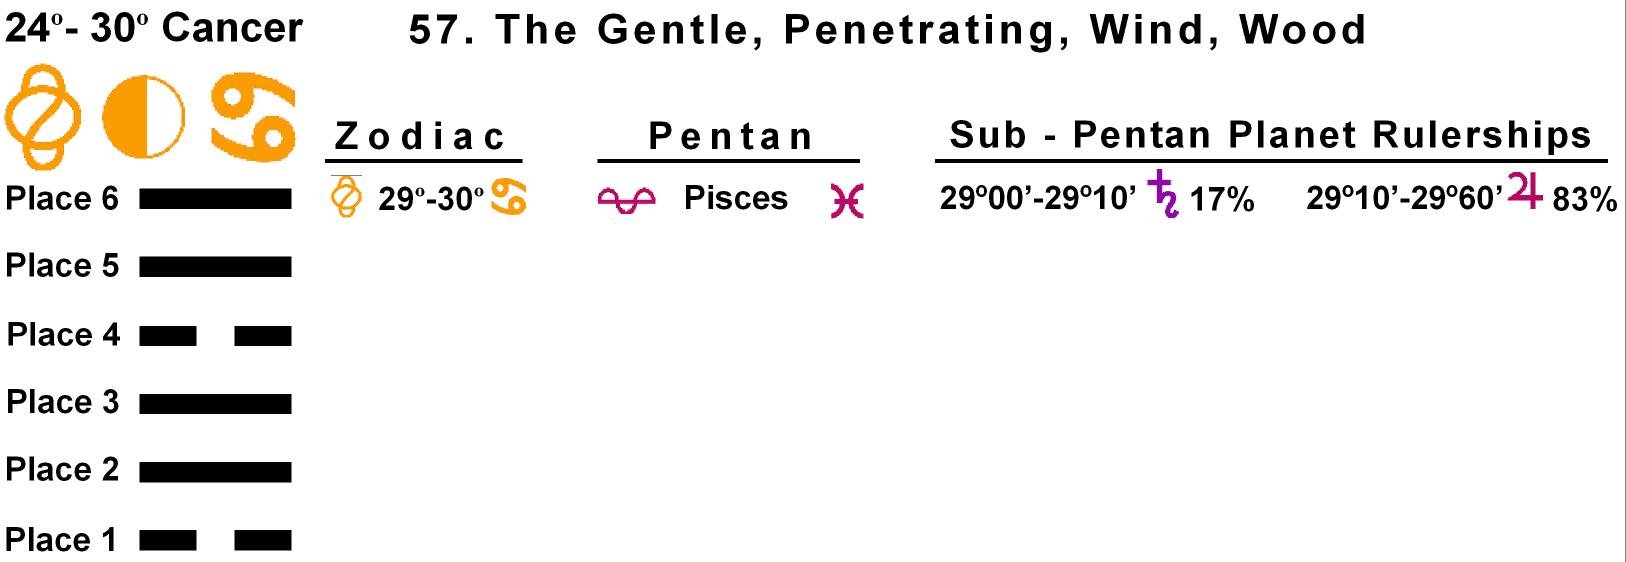 Pent-lines-04CA 29-30 Hx-57 The Gentle